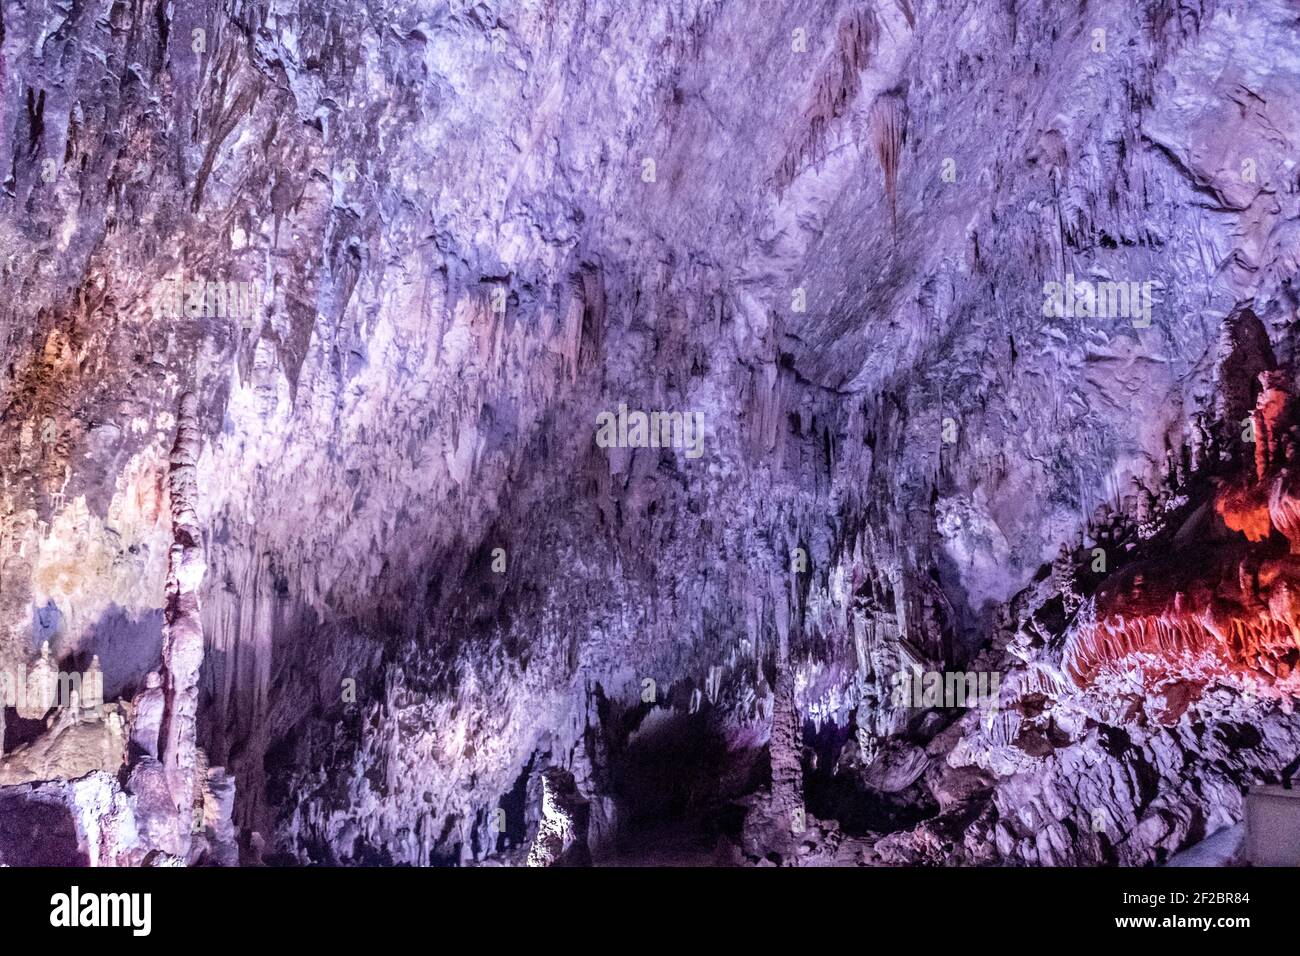 Les grottes de Pertosa Auletta (en italien : Grotte di Pertosa Auletta) sont un système de grottes karstiques situé dans la municipalité de Pertosa, dans la province de Banque D'Images